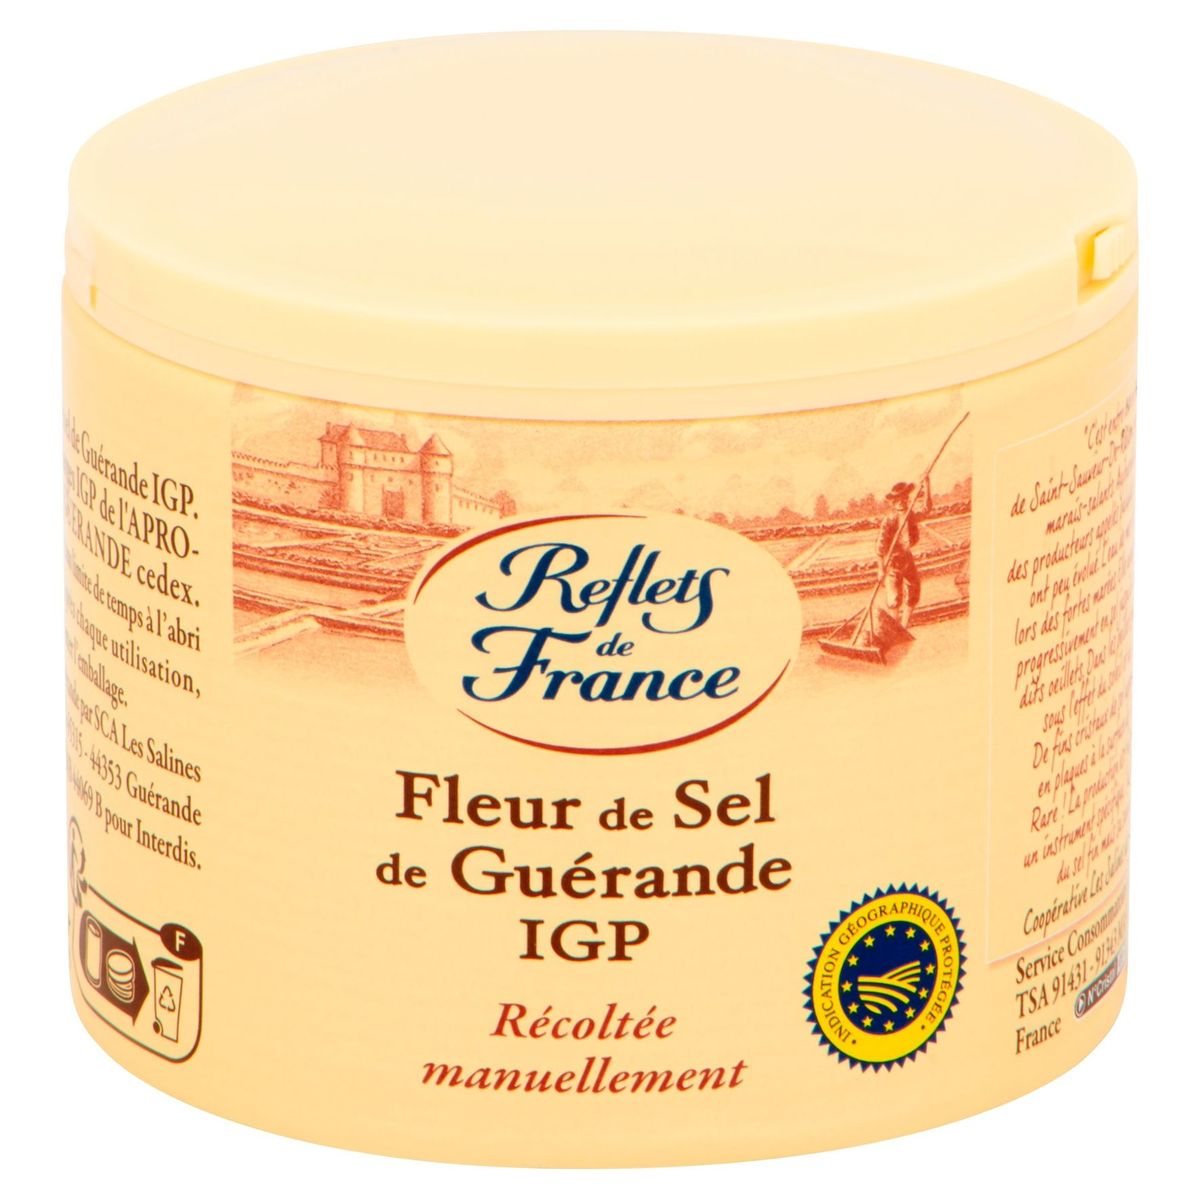 Reflets de France Fleur de Sel de Guérande IGP 140 g